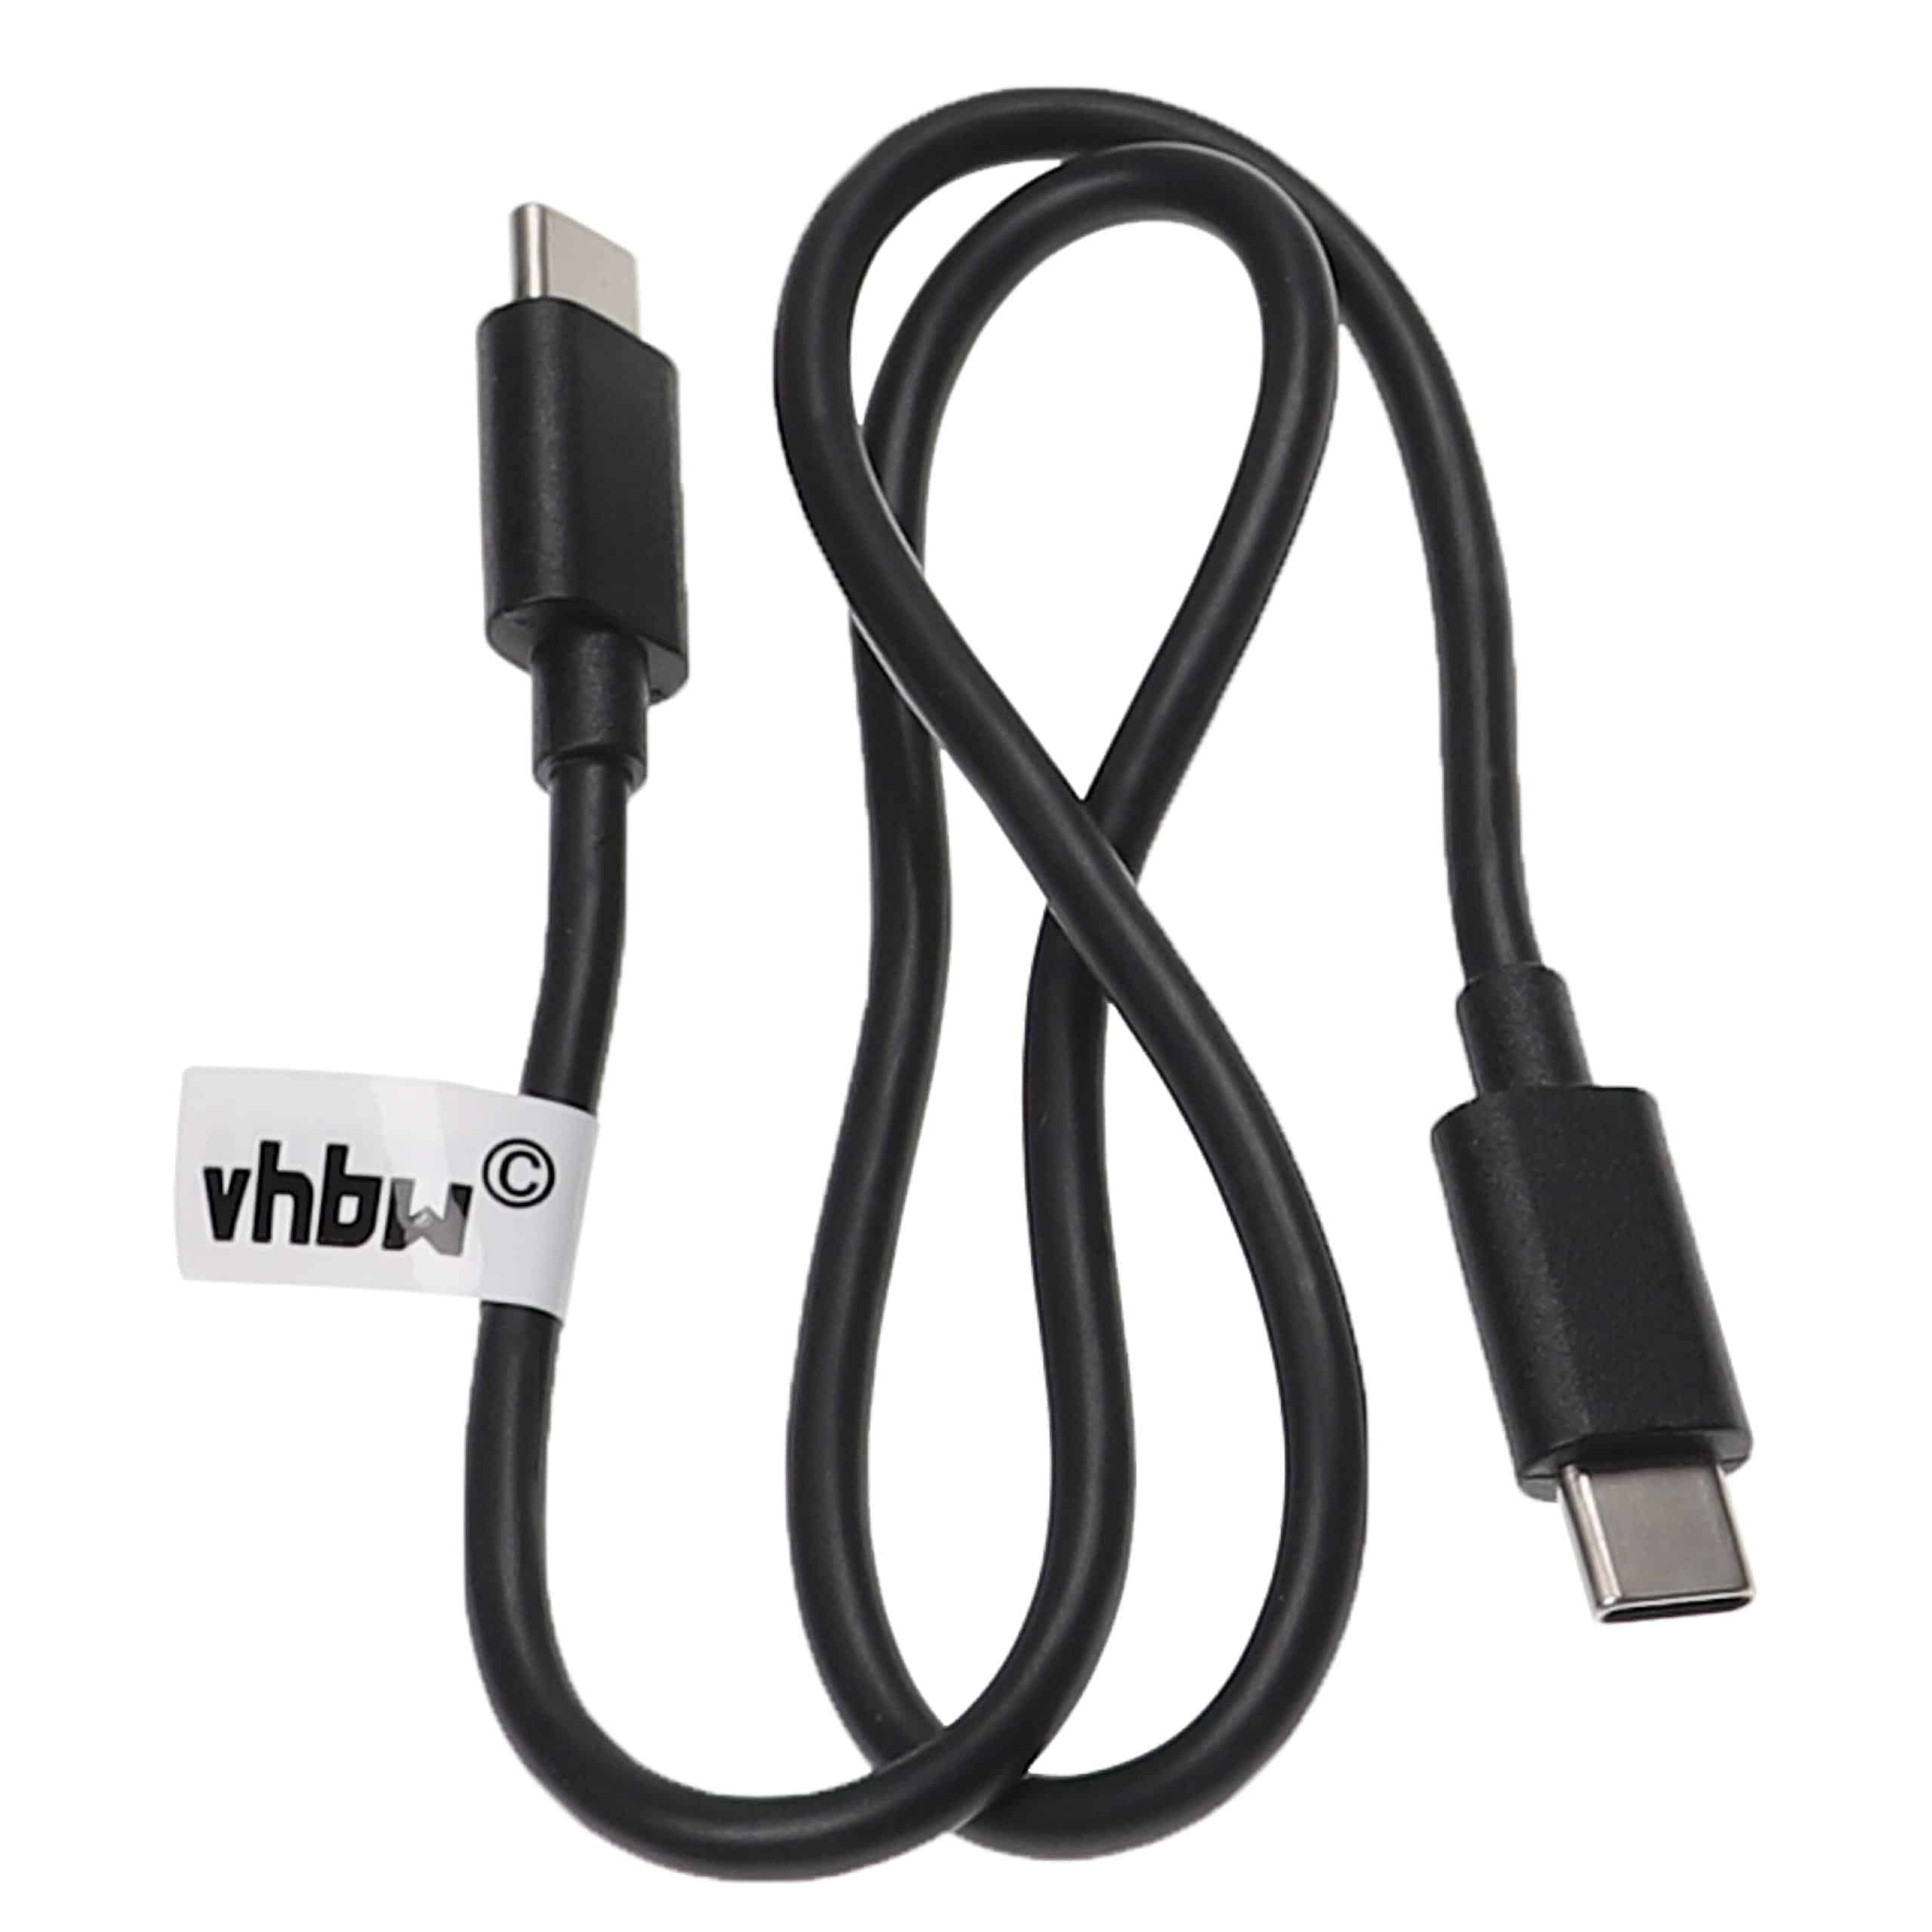 Cable de carga USB rápido para diversos portátiles, tablets, smartphones - 50 cm, negro